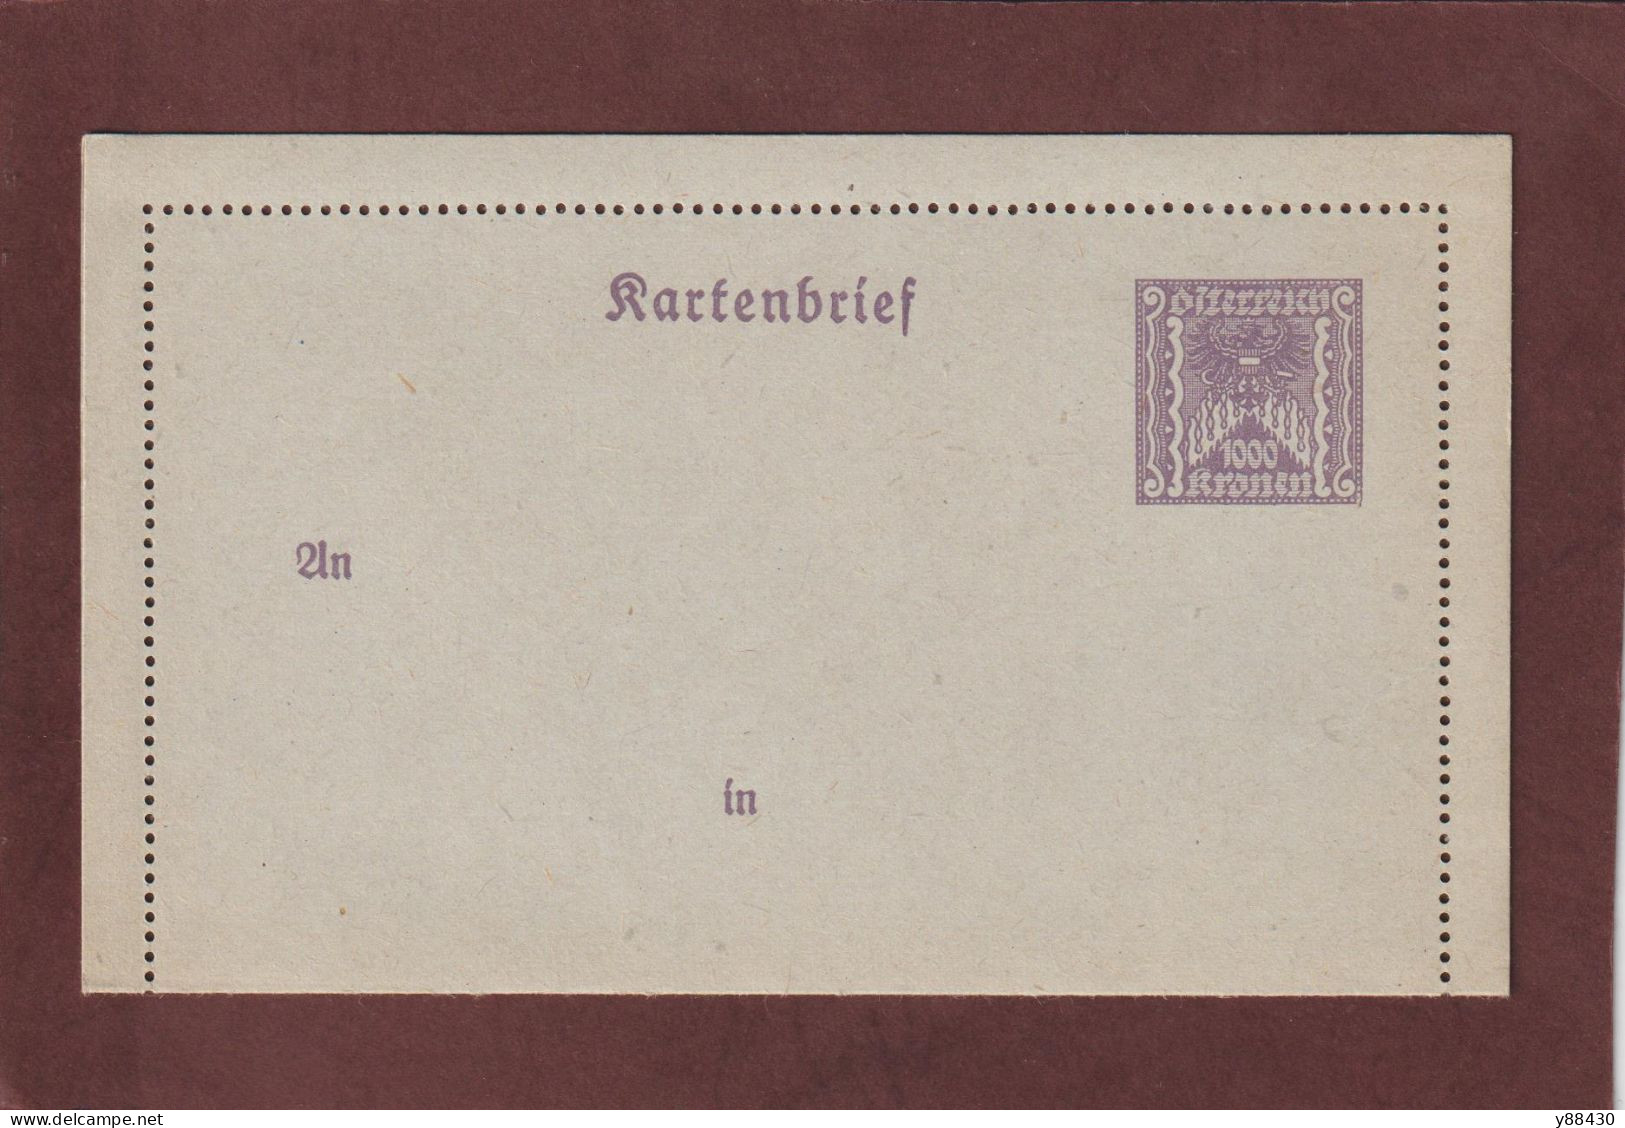 AUTRICHE - Entier Postal Neuf - 1910/1930 - Entier Sur Carte Lettre Gommé  - 1000k. Violet  - 5 Scan - Carte-Lettere